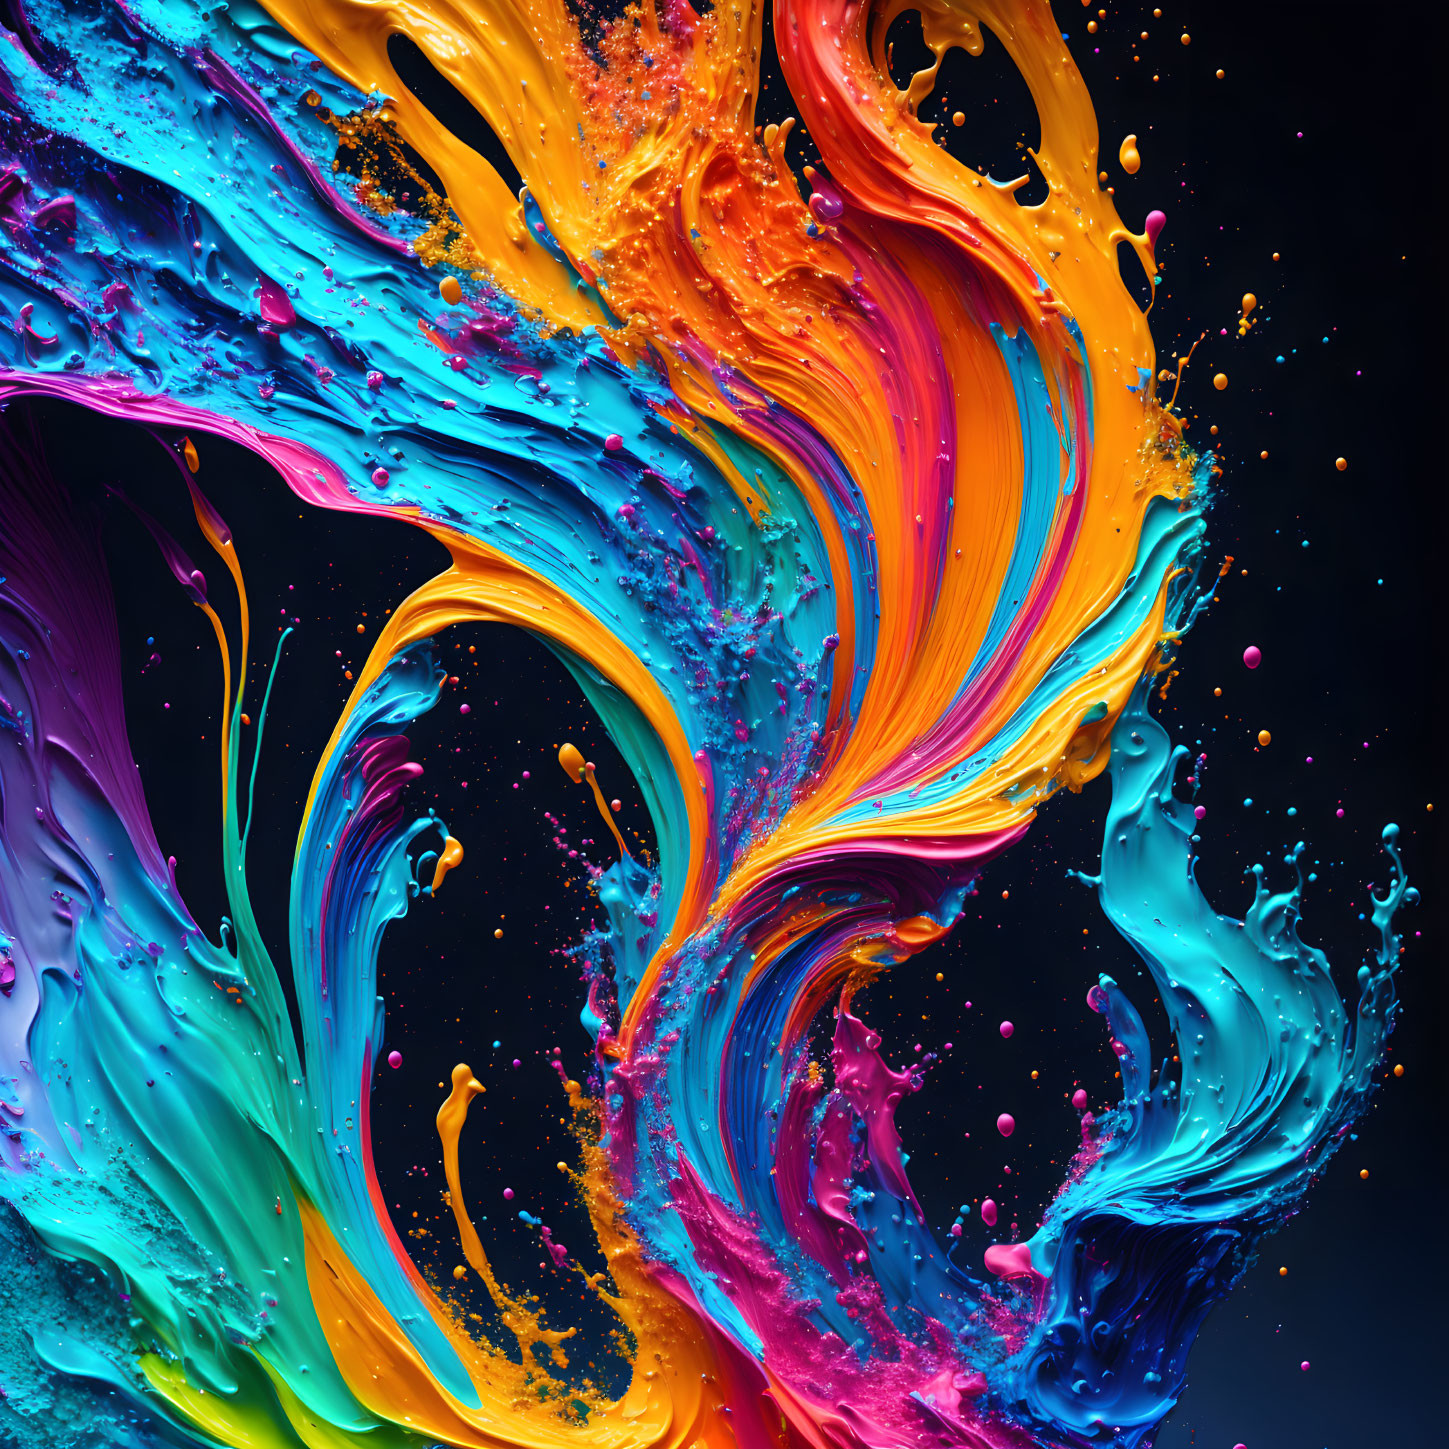 Splash of colour